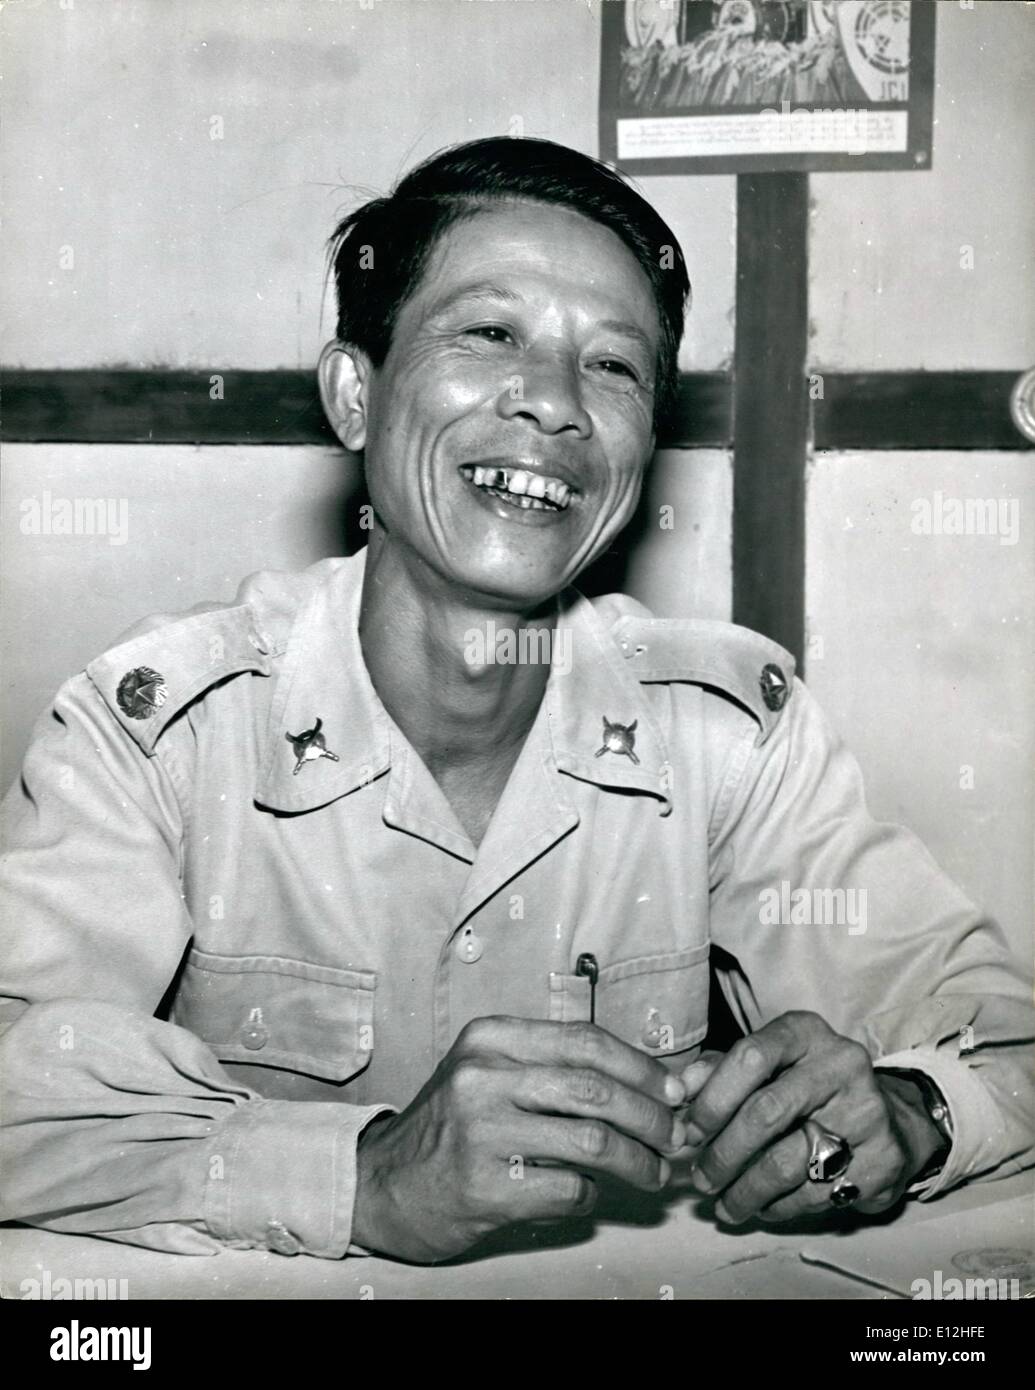 Febrero 24, 2012 - Nuevo comandante de las fuerzas de Pathet Lao: Grandes Sa Sanith, nuevo comandante de las fuerzas de Pathet Lao en Xieng Ngun, quien fue nombrado por las fuerzas del Gobierno. Asumió el mando el 12 de mayo. Él ha estado en el ejército durante los últimos 18 años, primero con el francés. Foto de stock